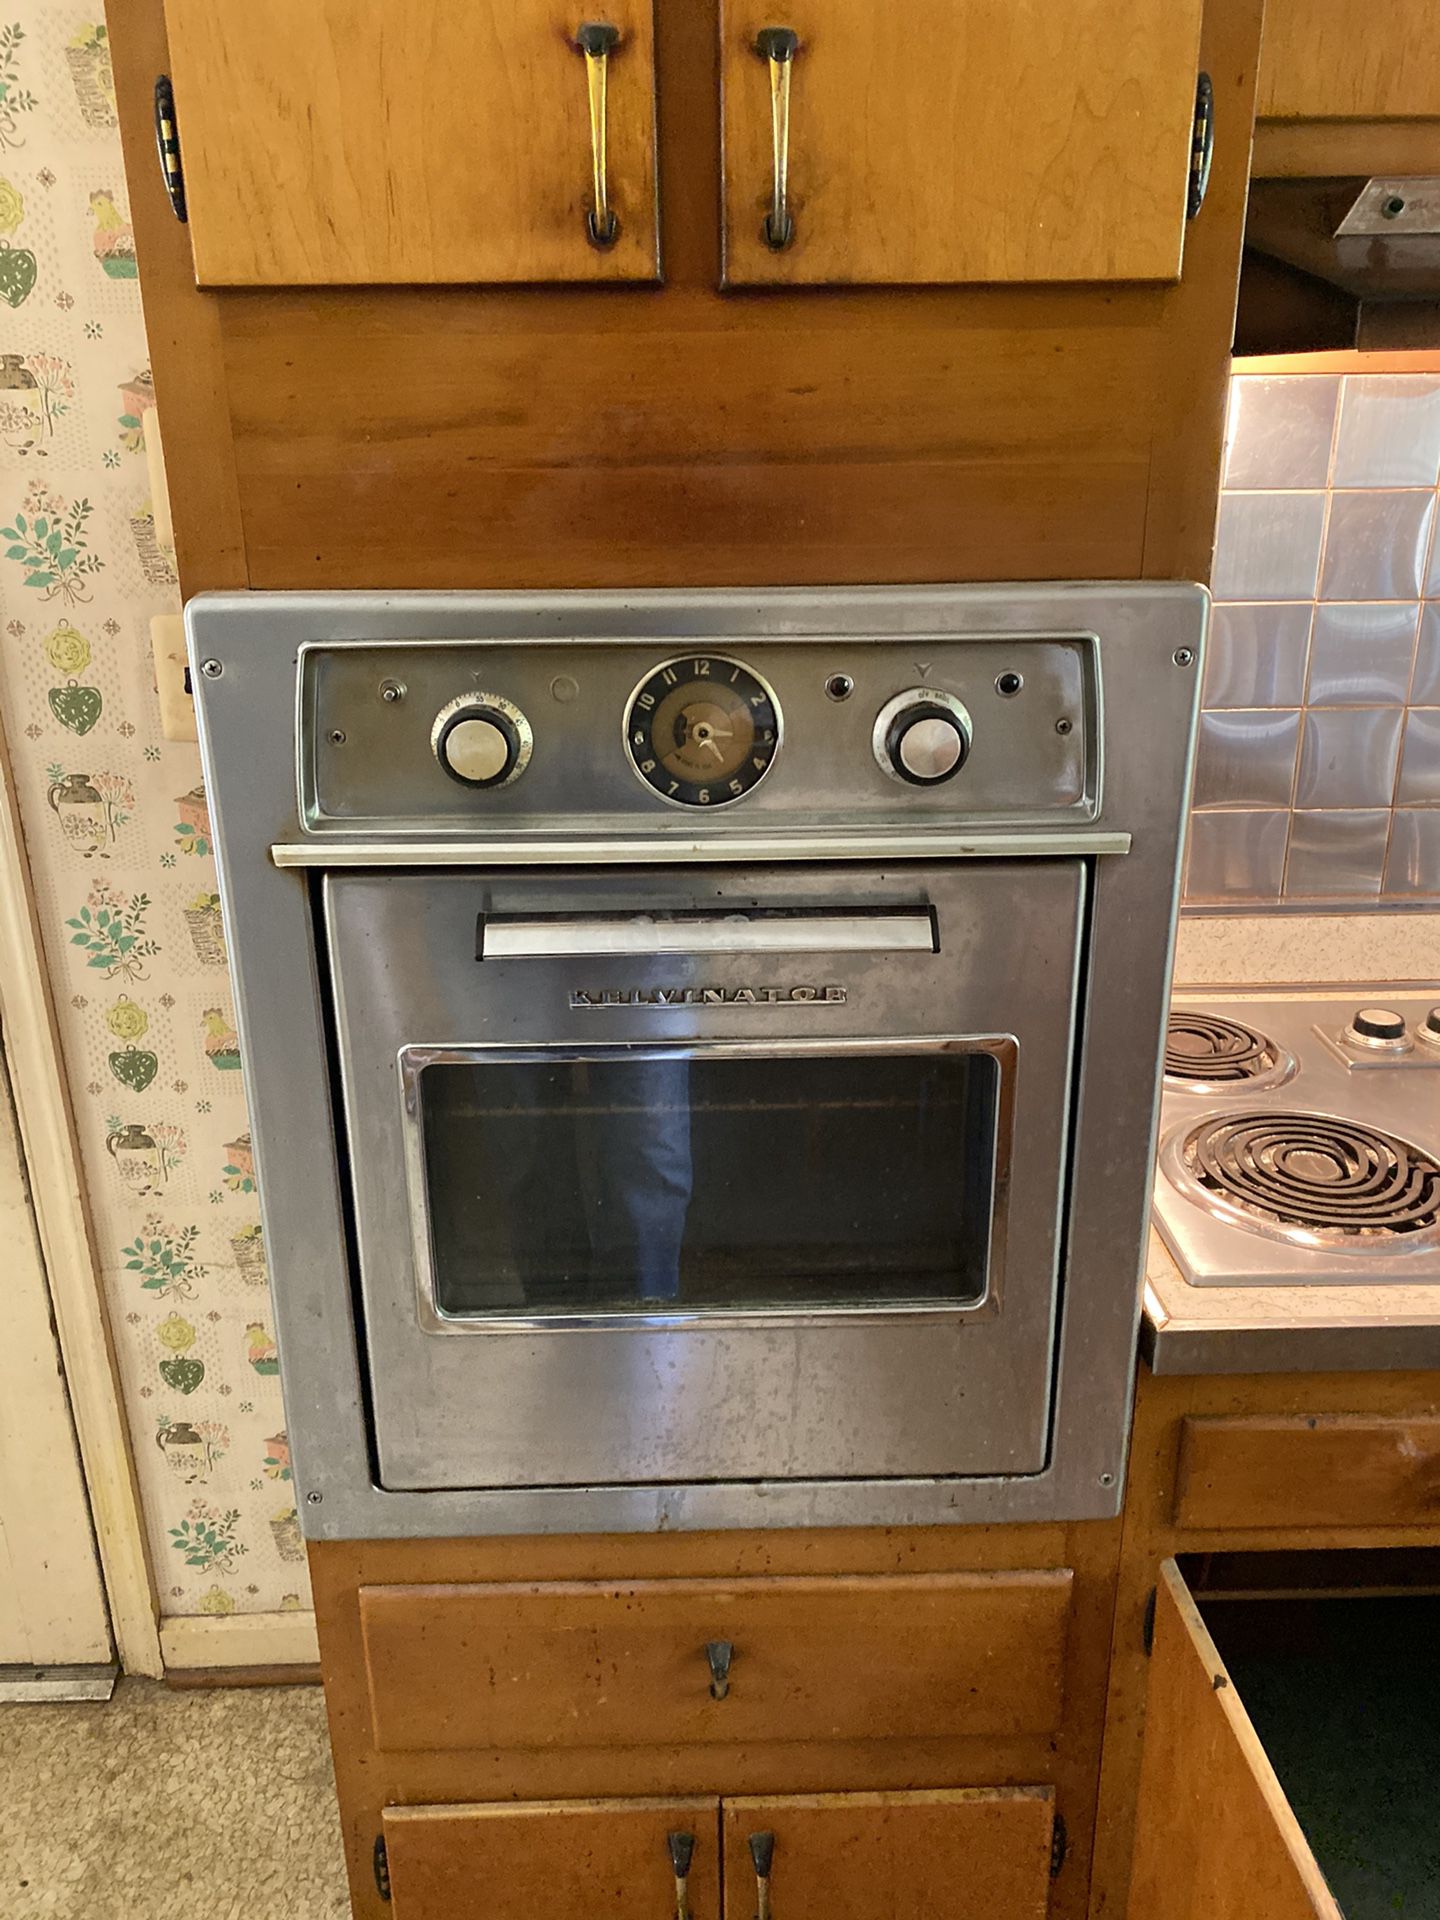 Oven - original retro oven